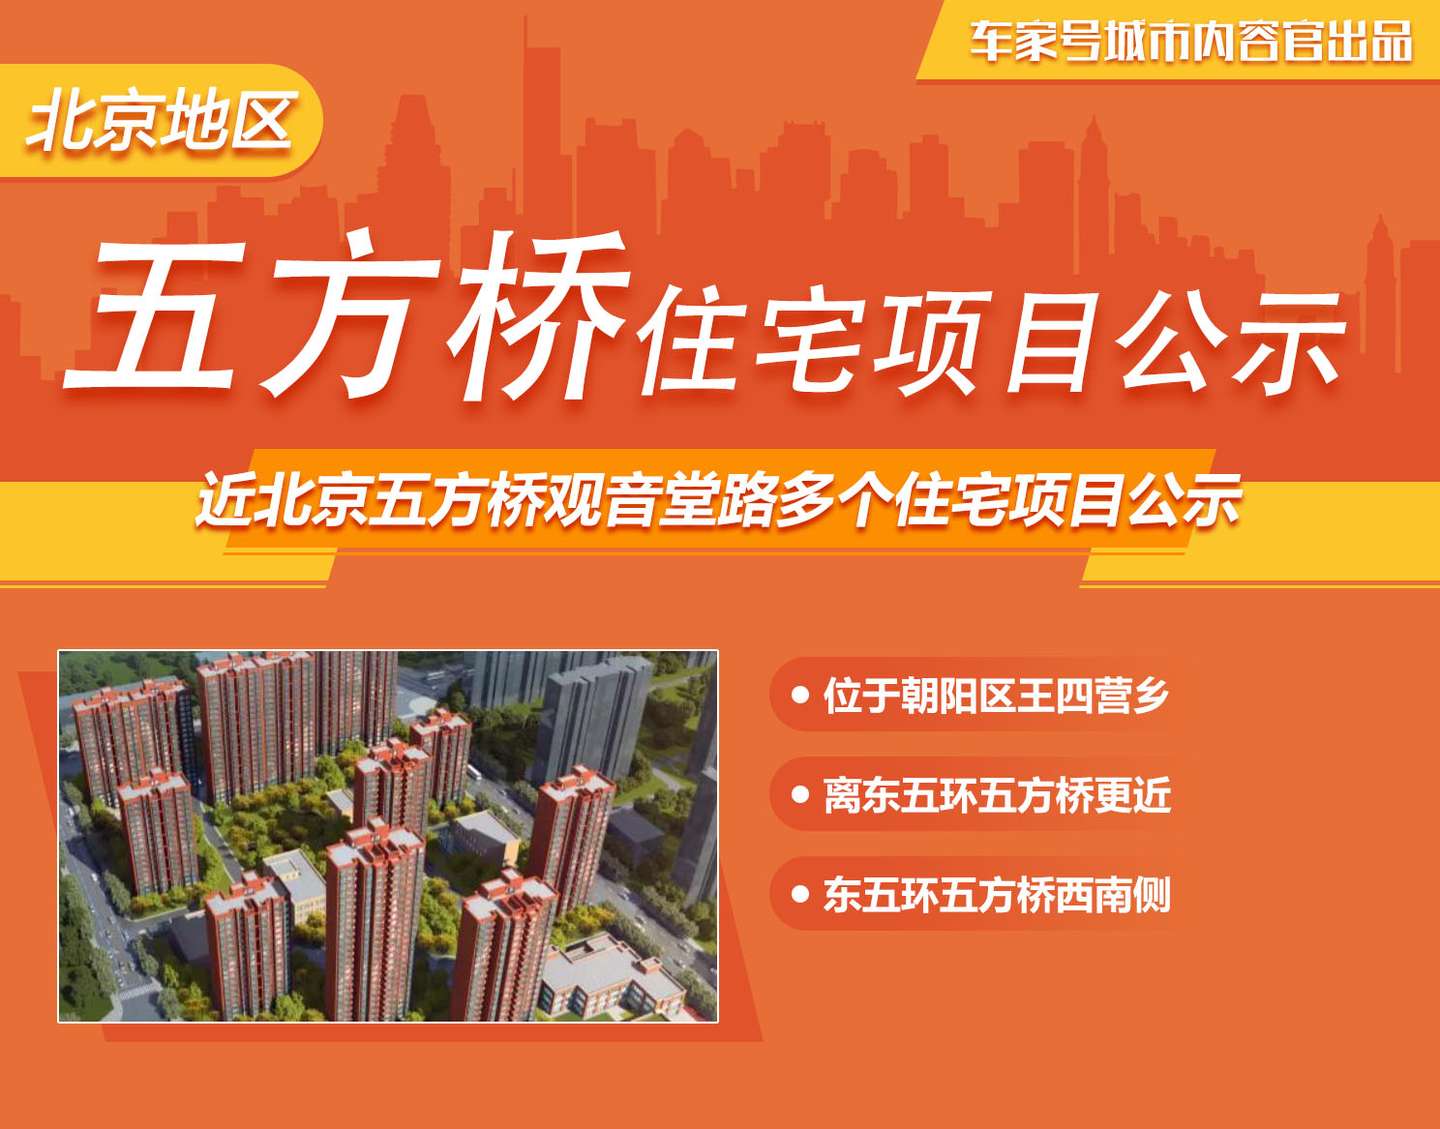 规划中央水池地下车库近北京五方桥观音堂路多个住宅项目公示 知乎